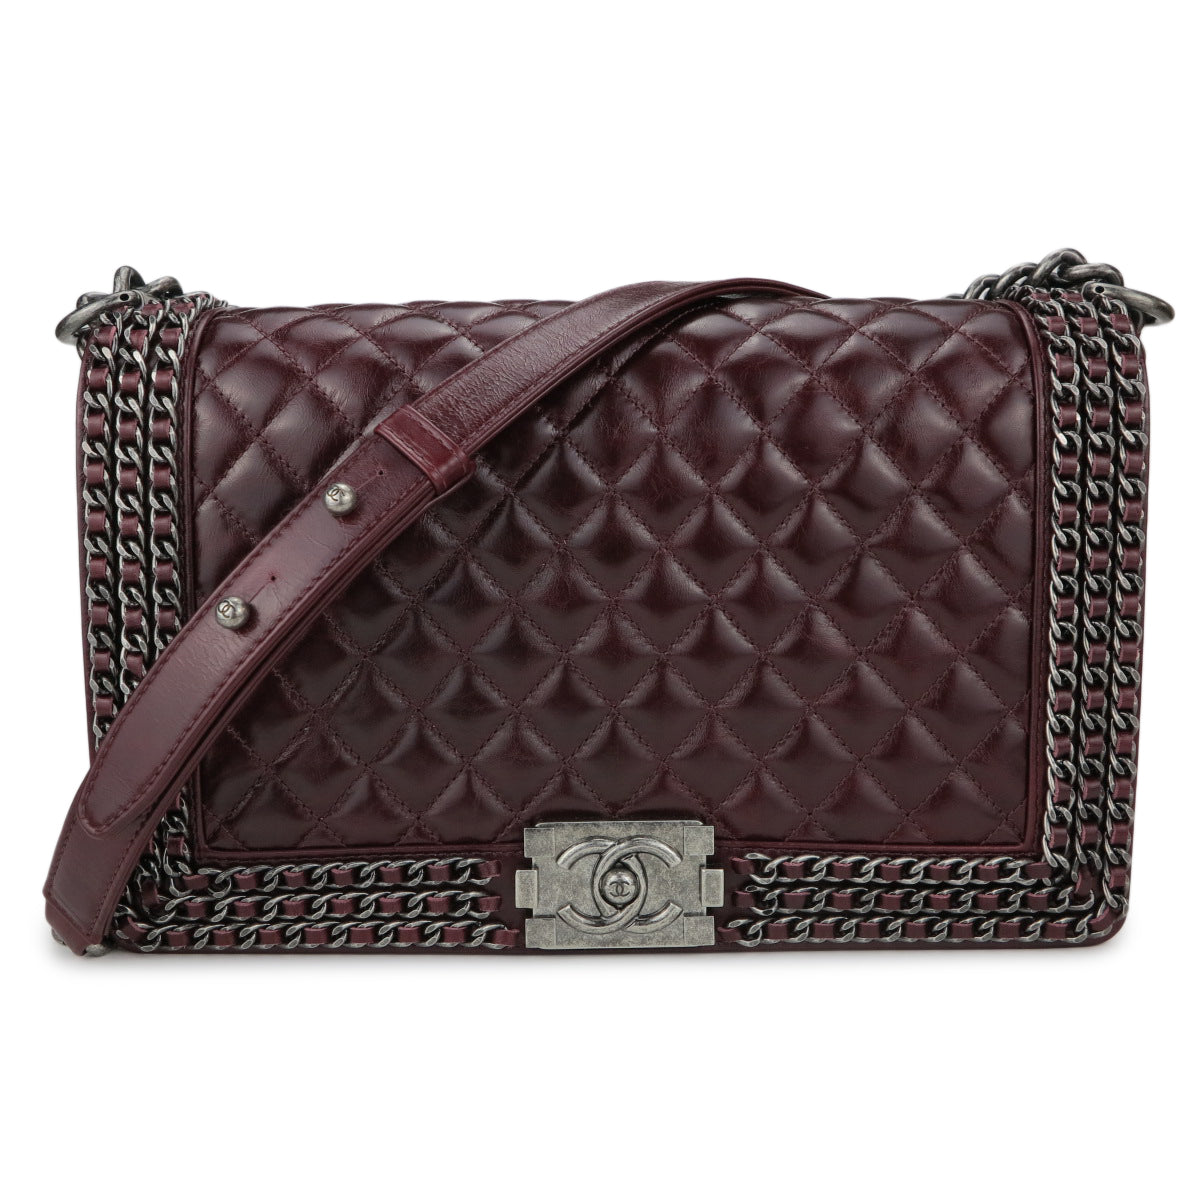 Chanel New Medium Boy Bag - Burgundy